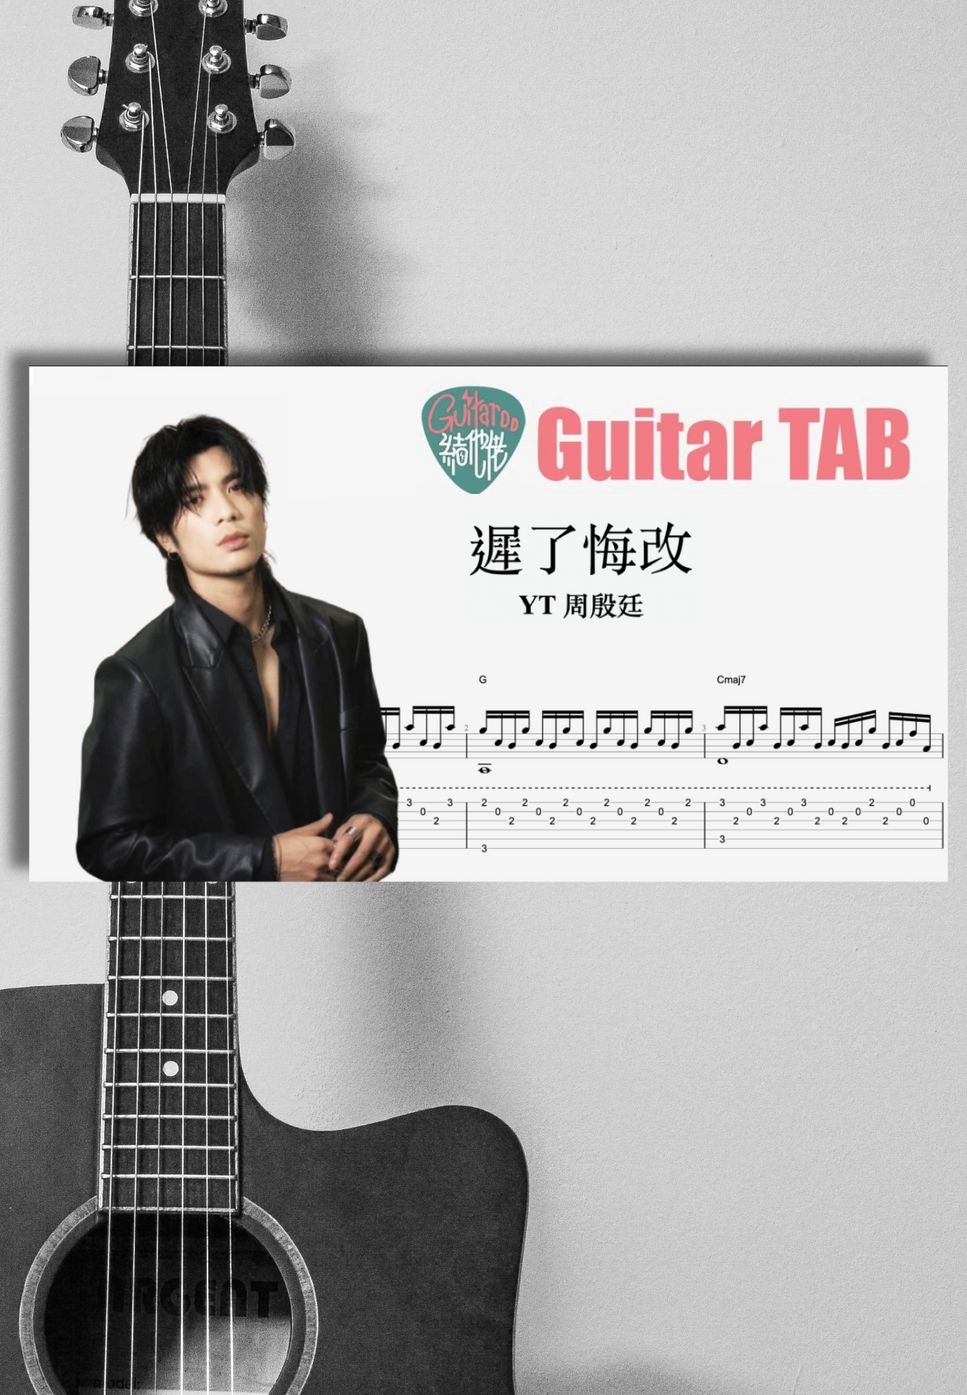 周殷廷 - 迟了悔改 by Guitaroohk